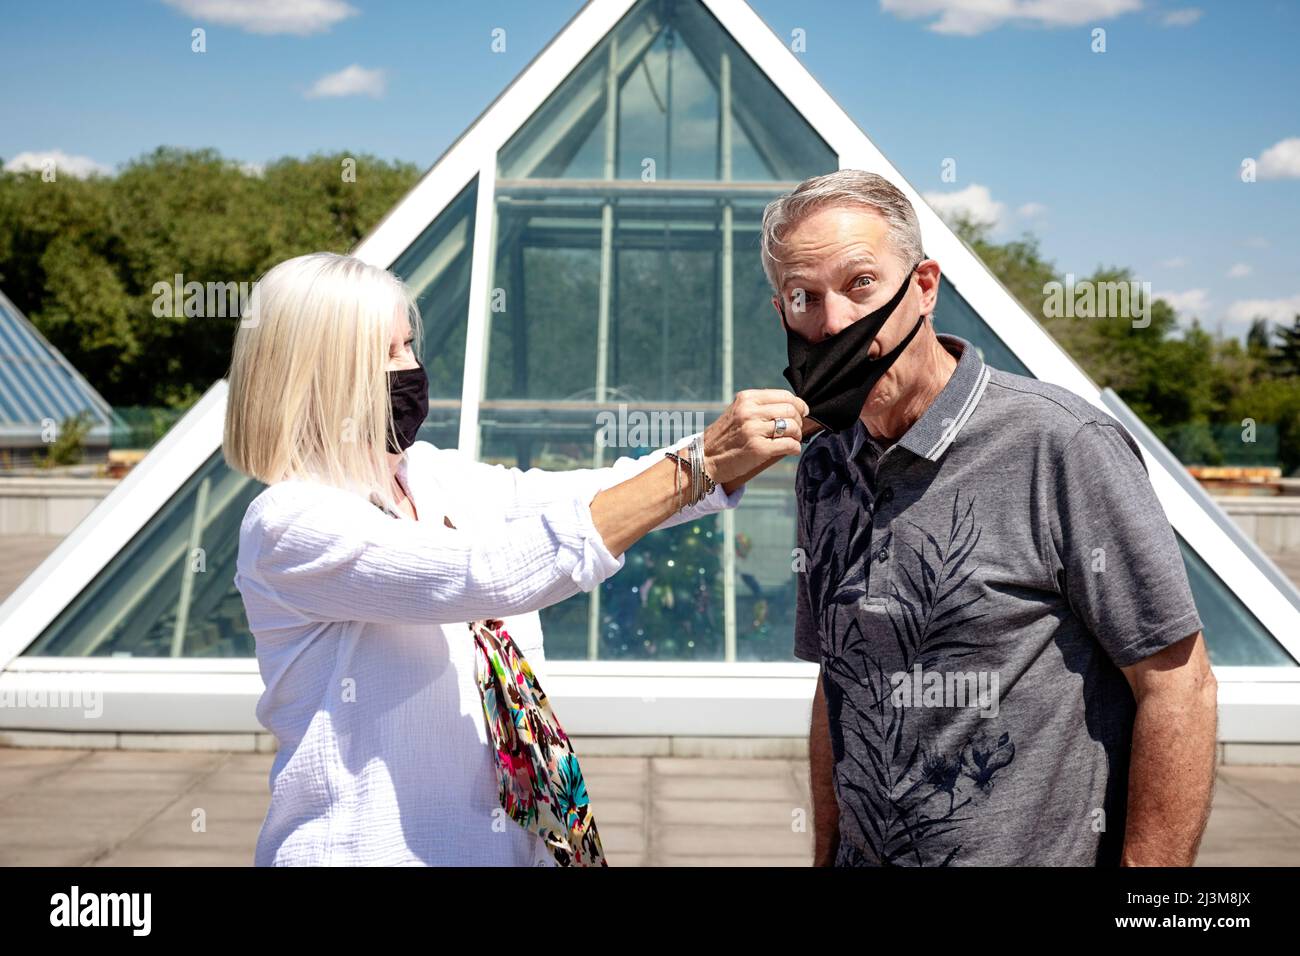 Un couple mature se tient dehors en portant son masque facial, la femme tirant le masque hors de son mari, pendant la pandémie Covid-19 Banque D'Images